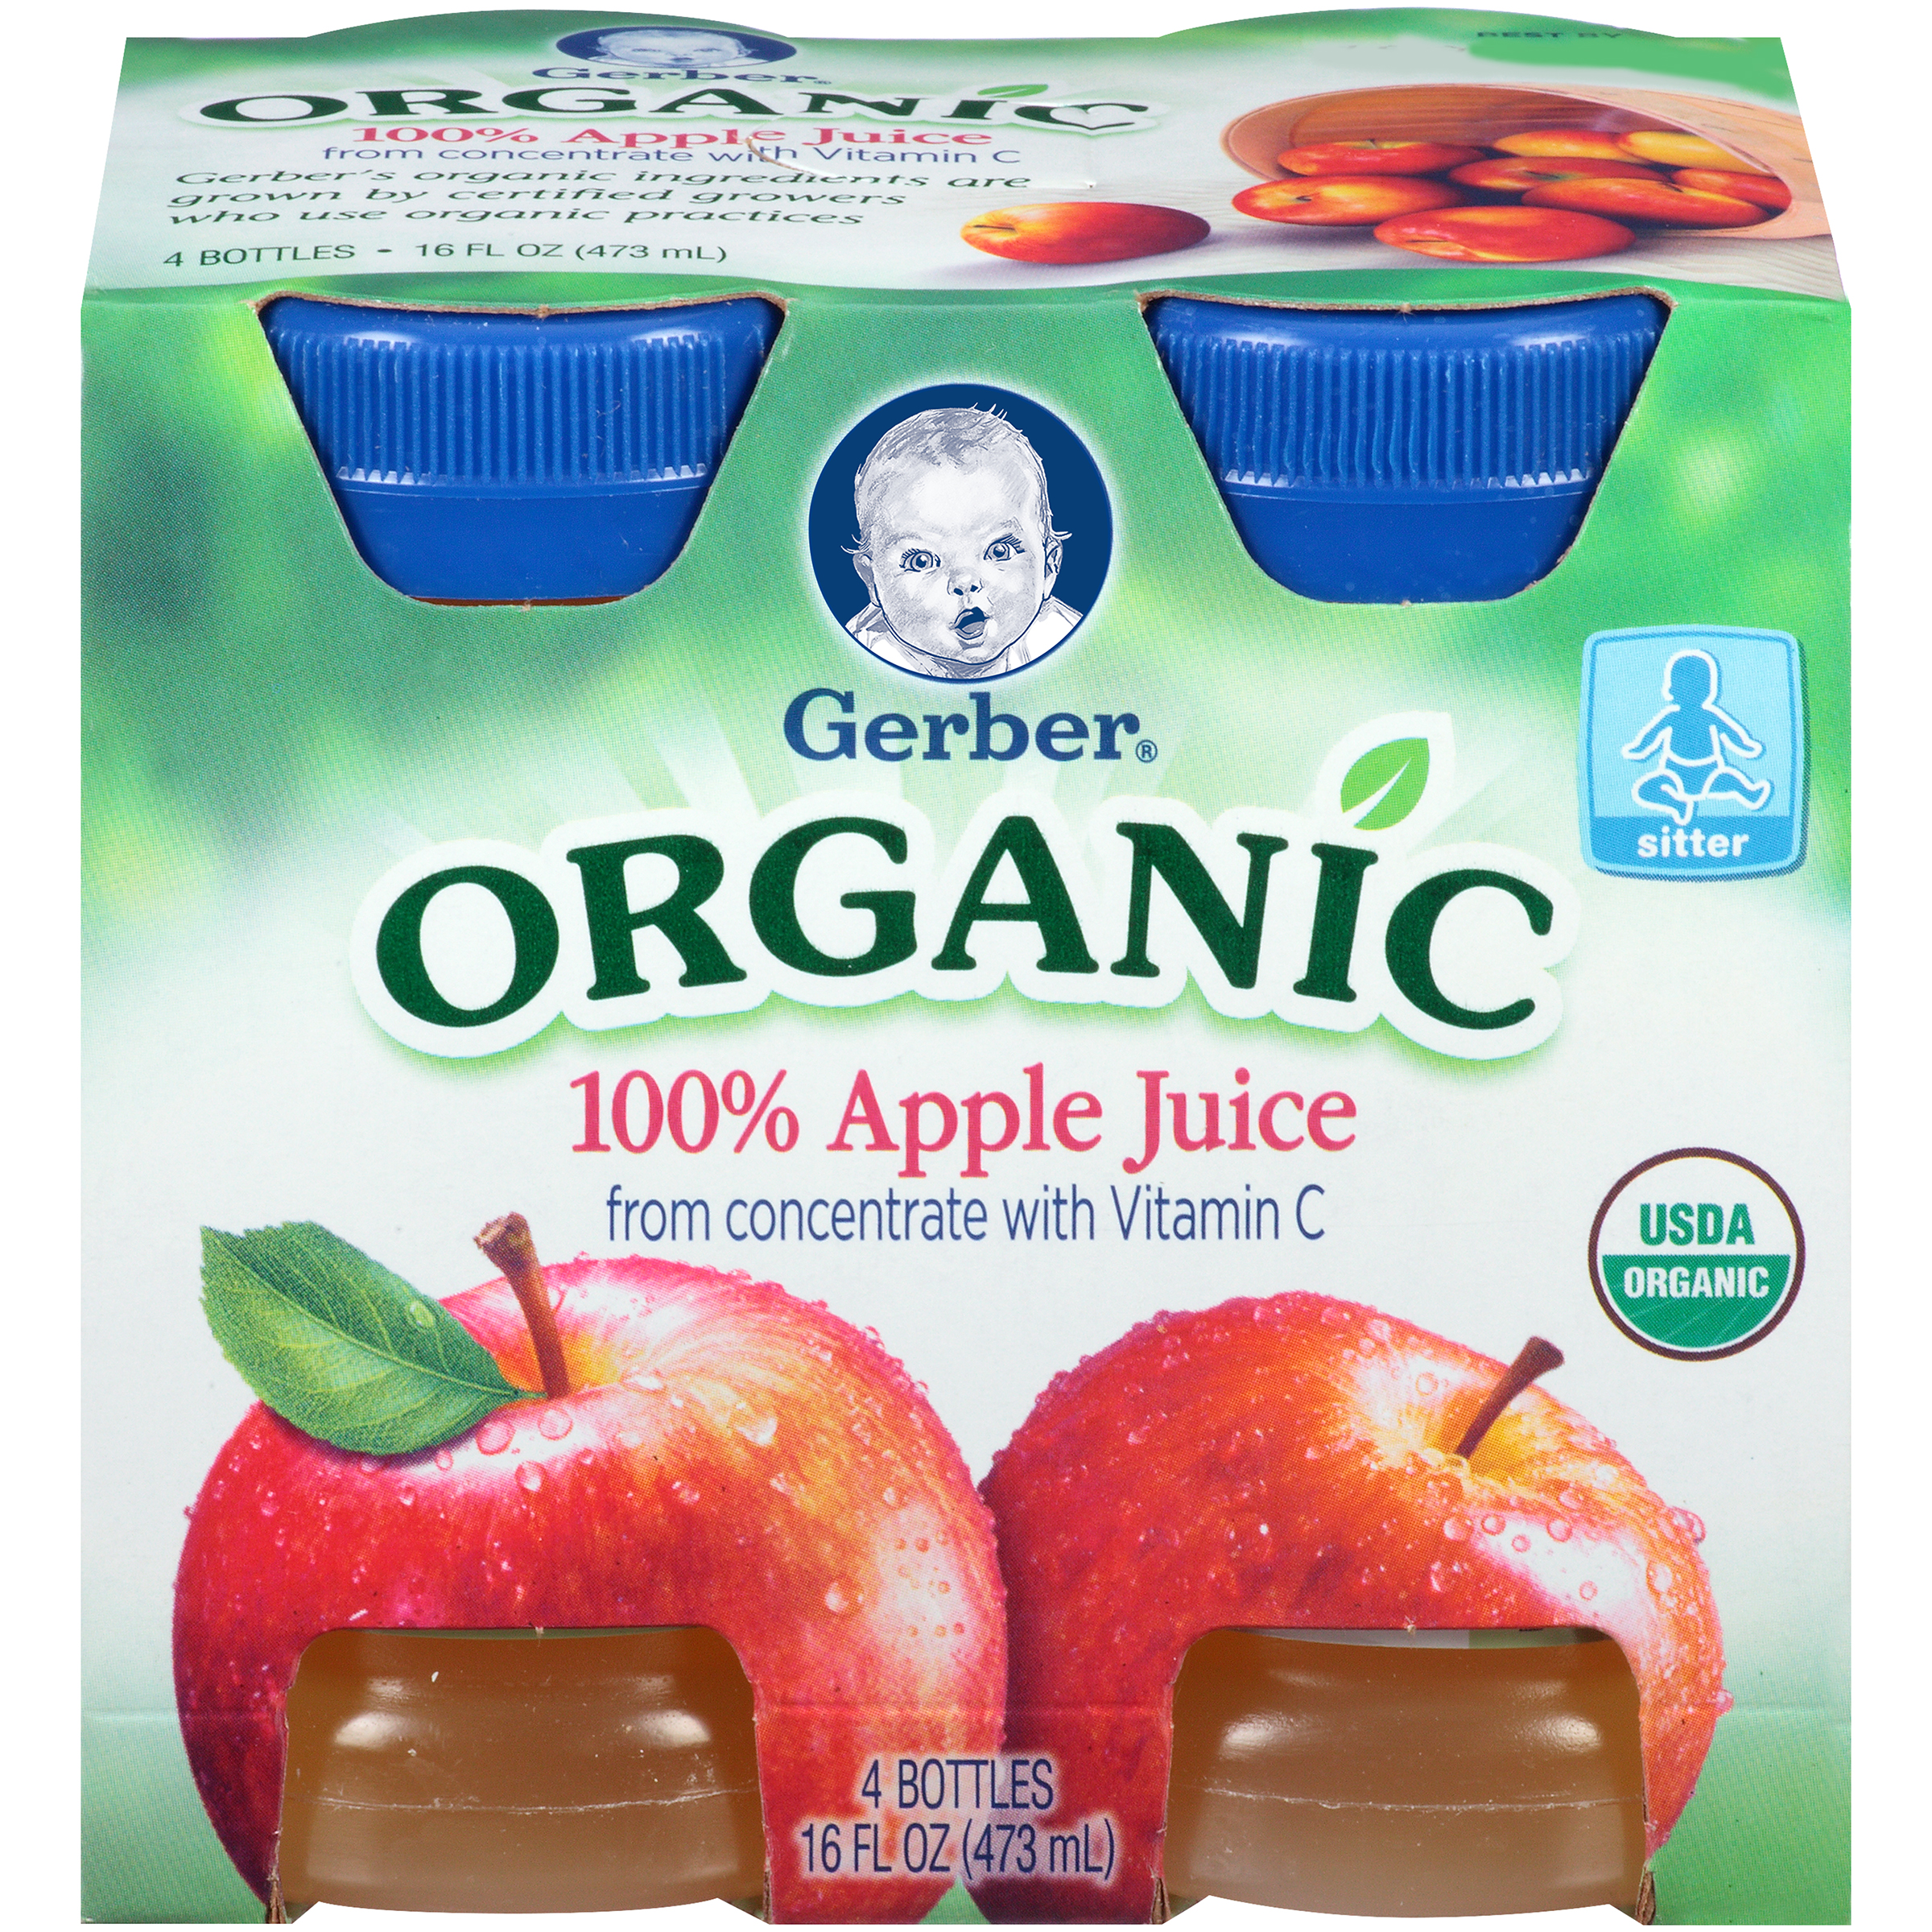 Gerber Organic Juice, Apple, 4 - 4 fl oz bottles [16 fl oz (473 ml)]